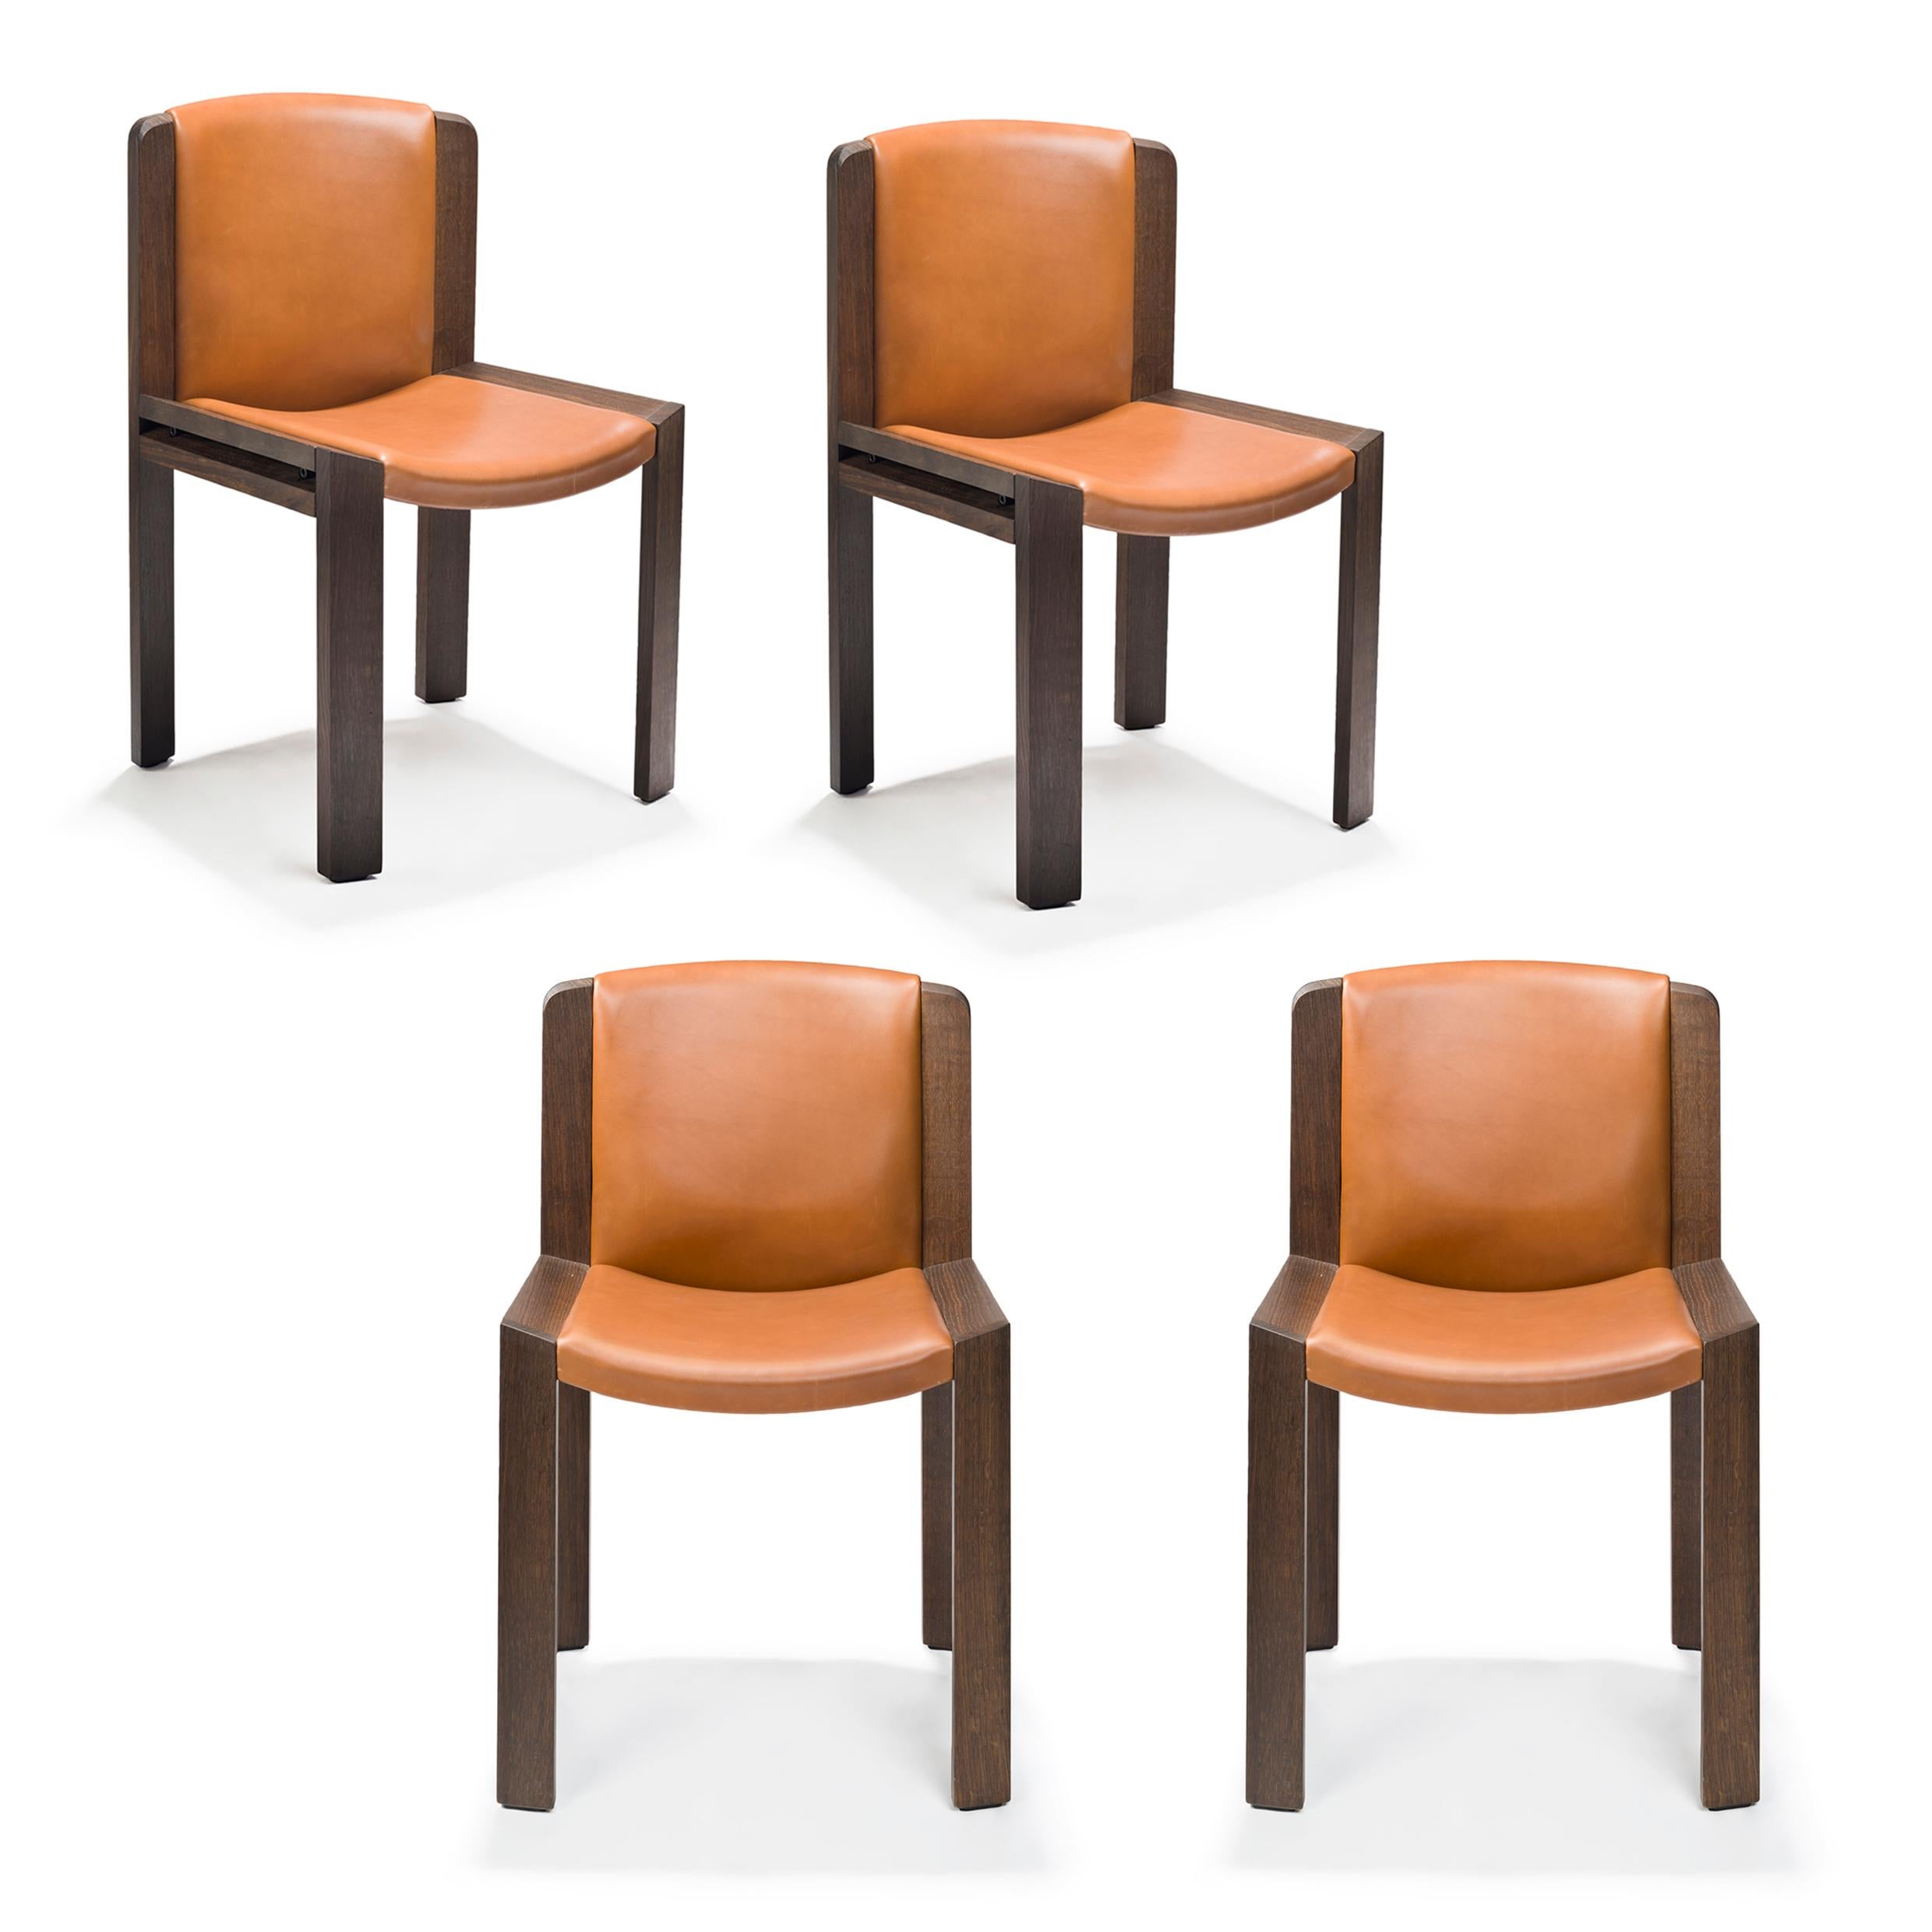 Chaise conçue par Joe Colombo en 1965.

Conçue par le designer italien avant-gardiste Joe Colombo, la chaise 300 est un bel exemple de sa sensibilité en matière de design fonctionnel. L'assise et le dossier rembourrés, doucement courbés à